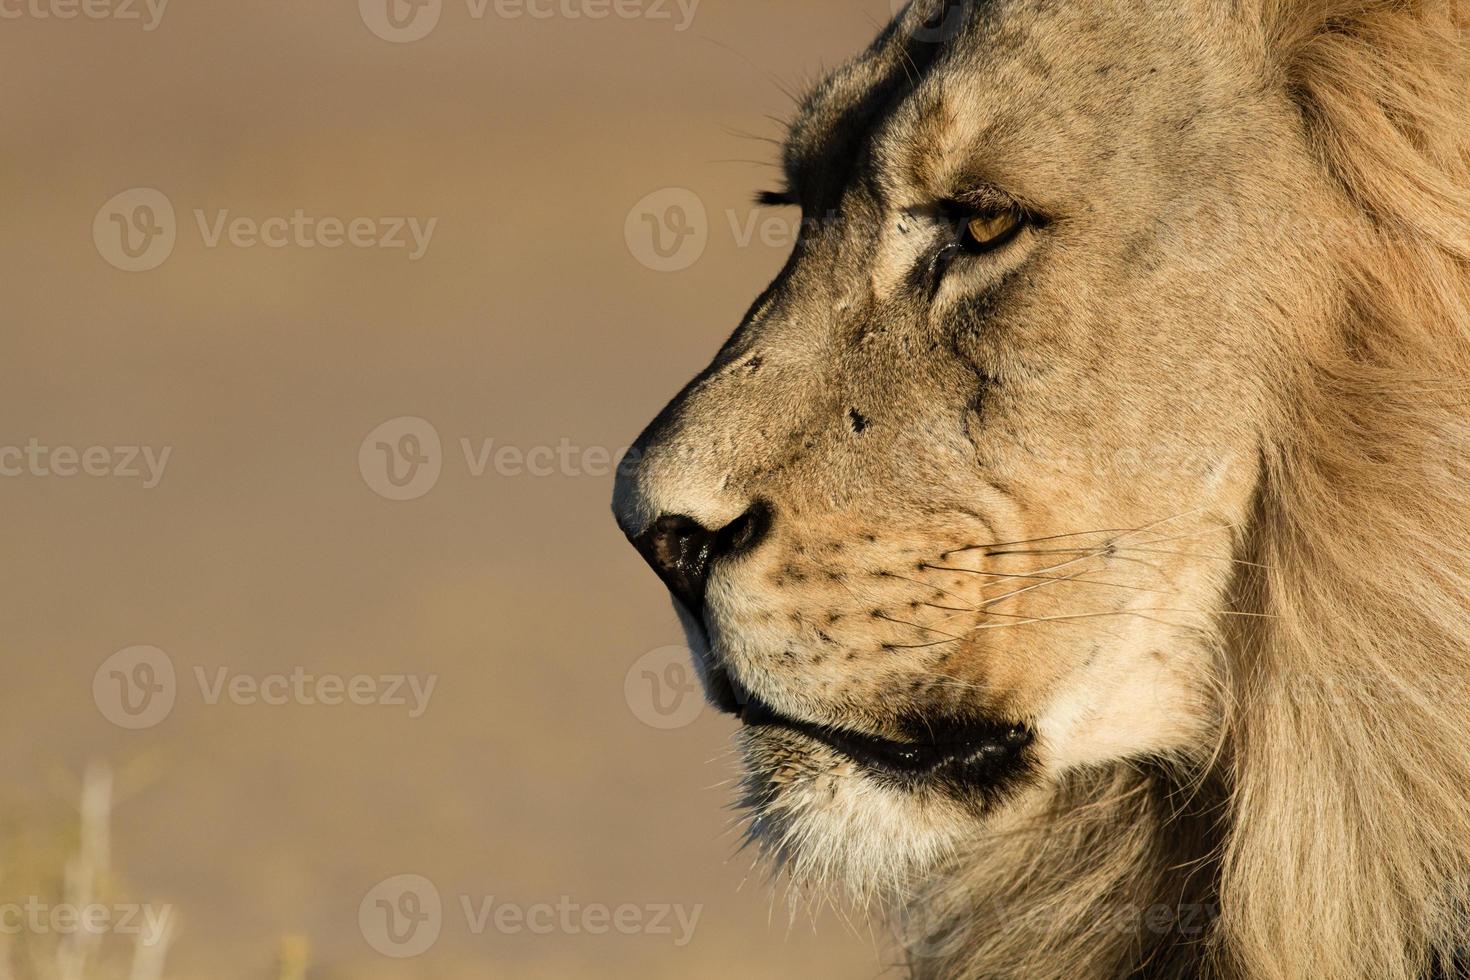 extremo close-up tiro na cabeça de um leão kalahari. foto